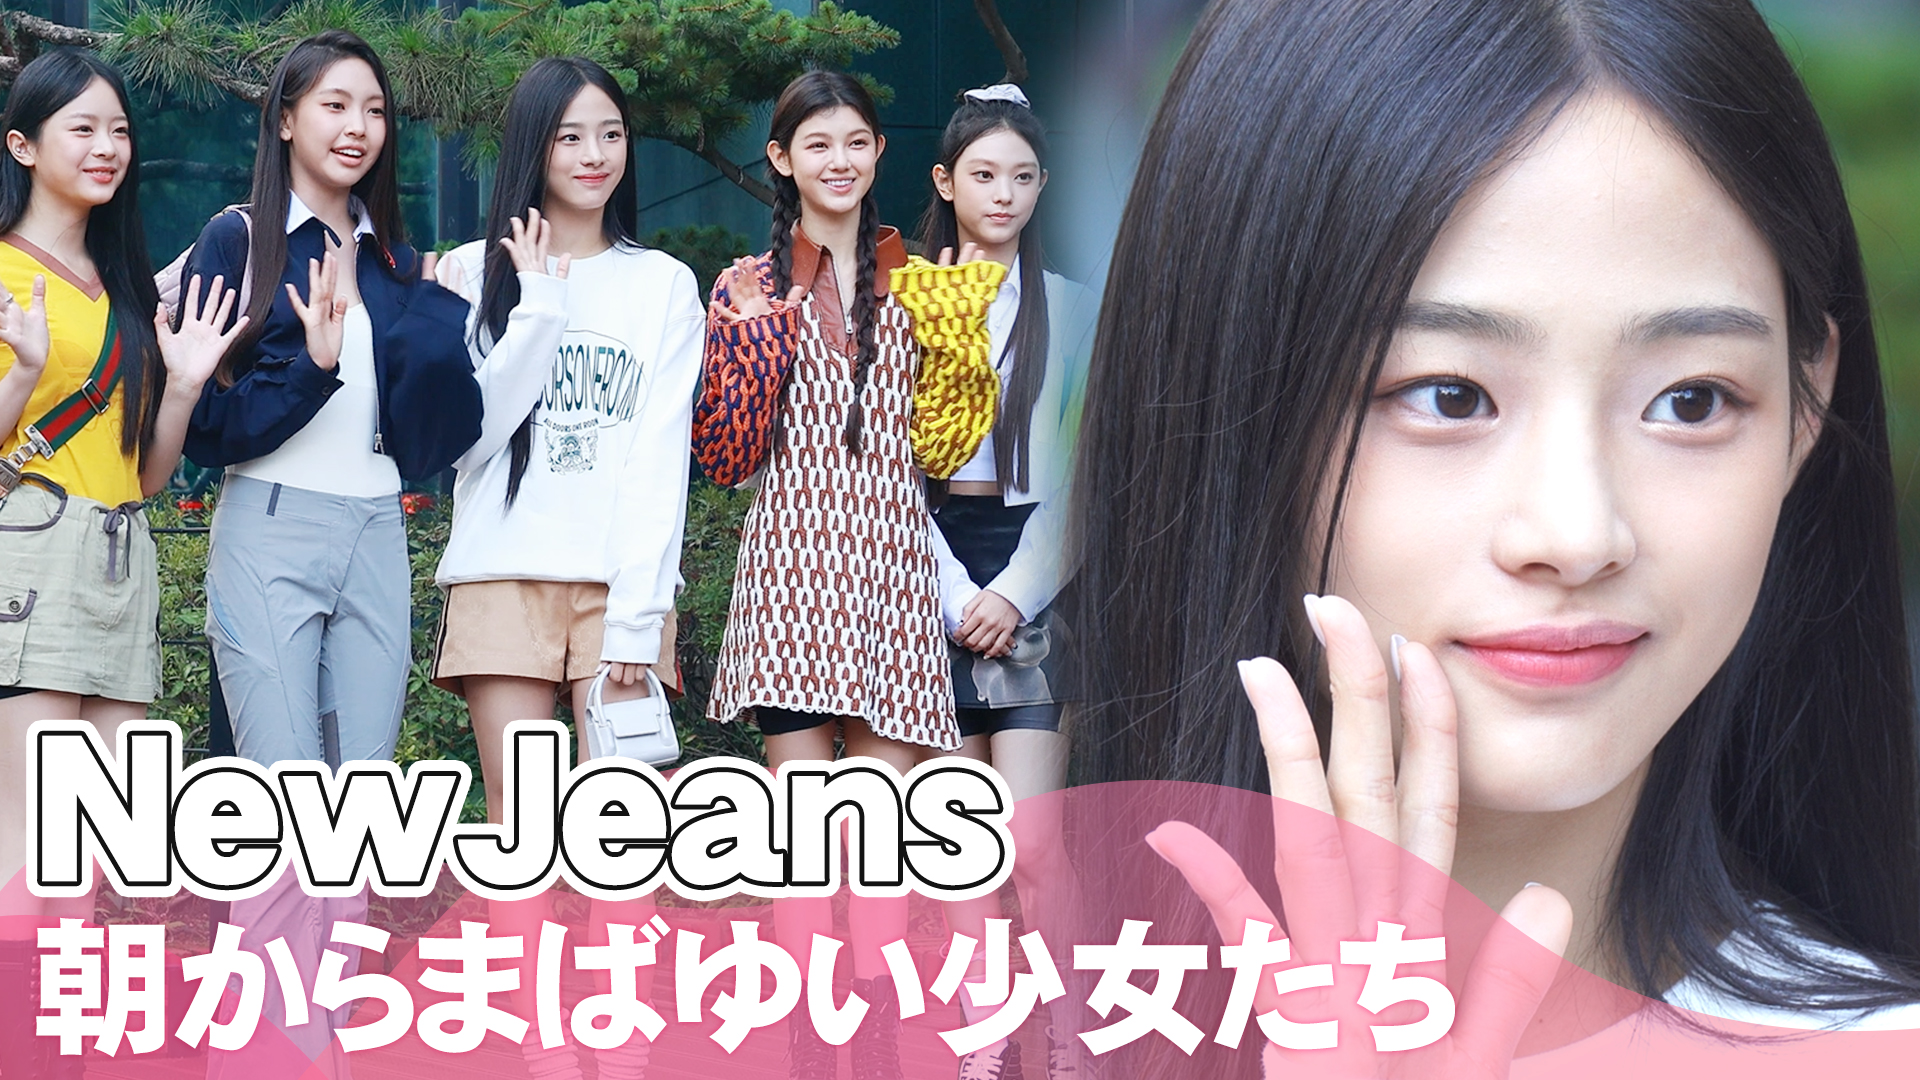 【動画】NewJeans、朝からまばゆい少女たち